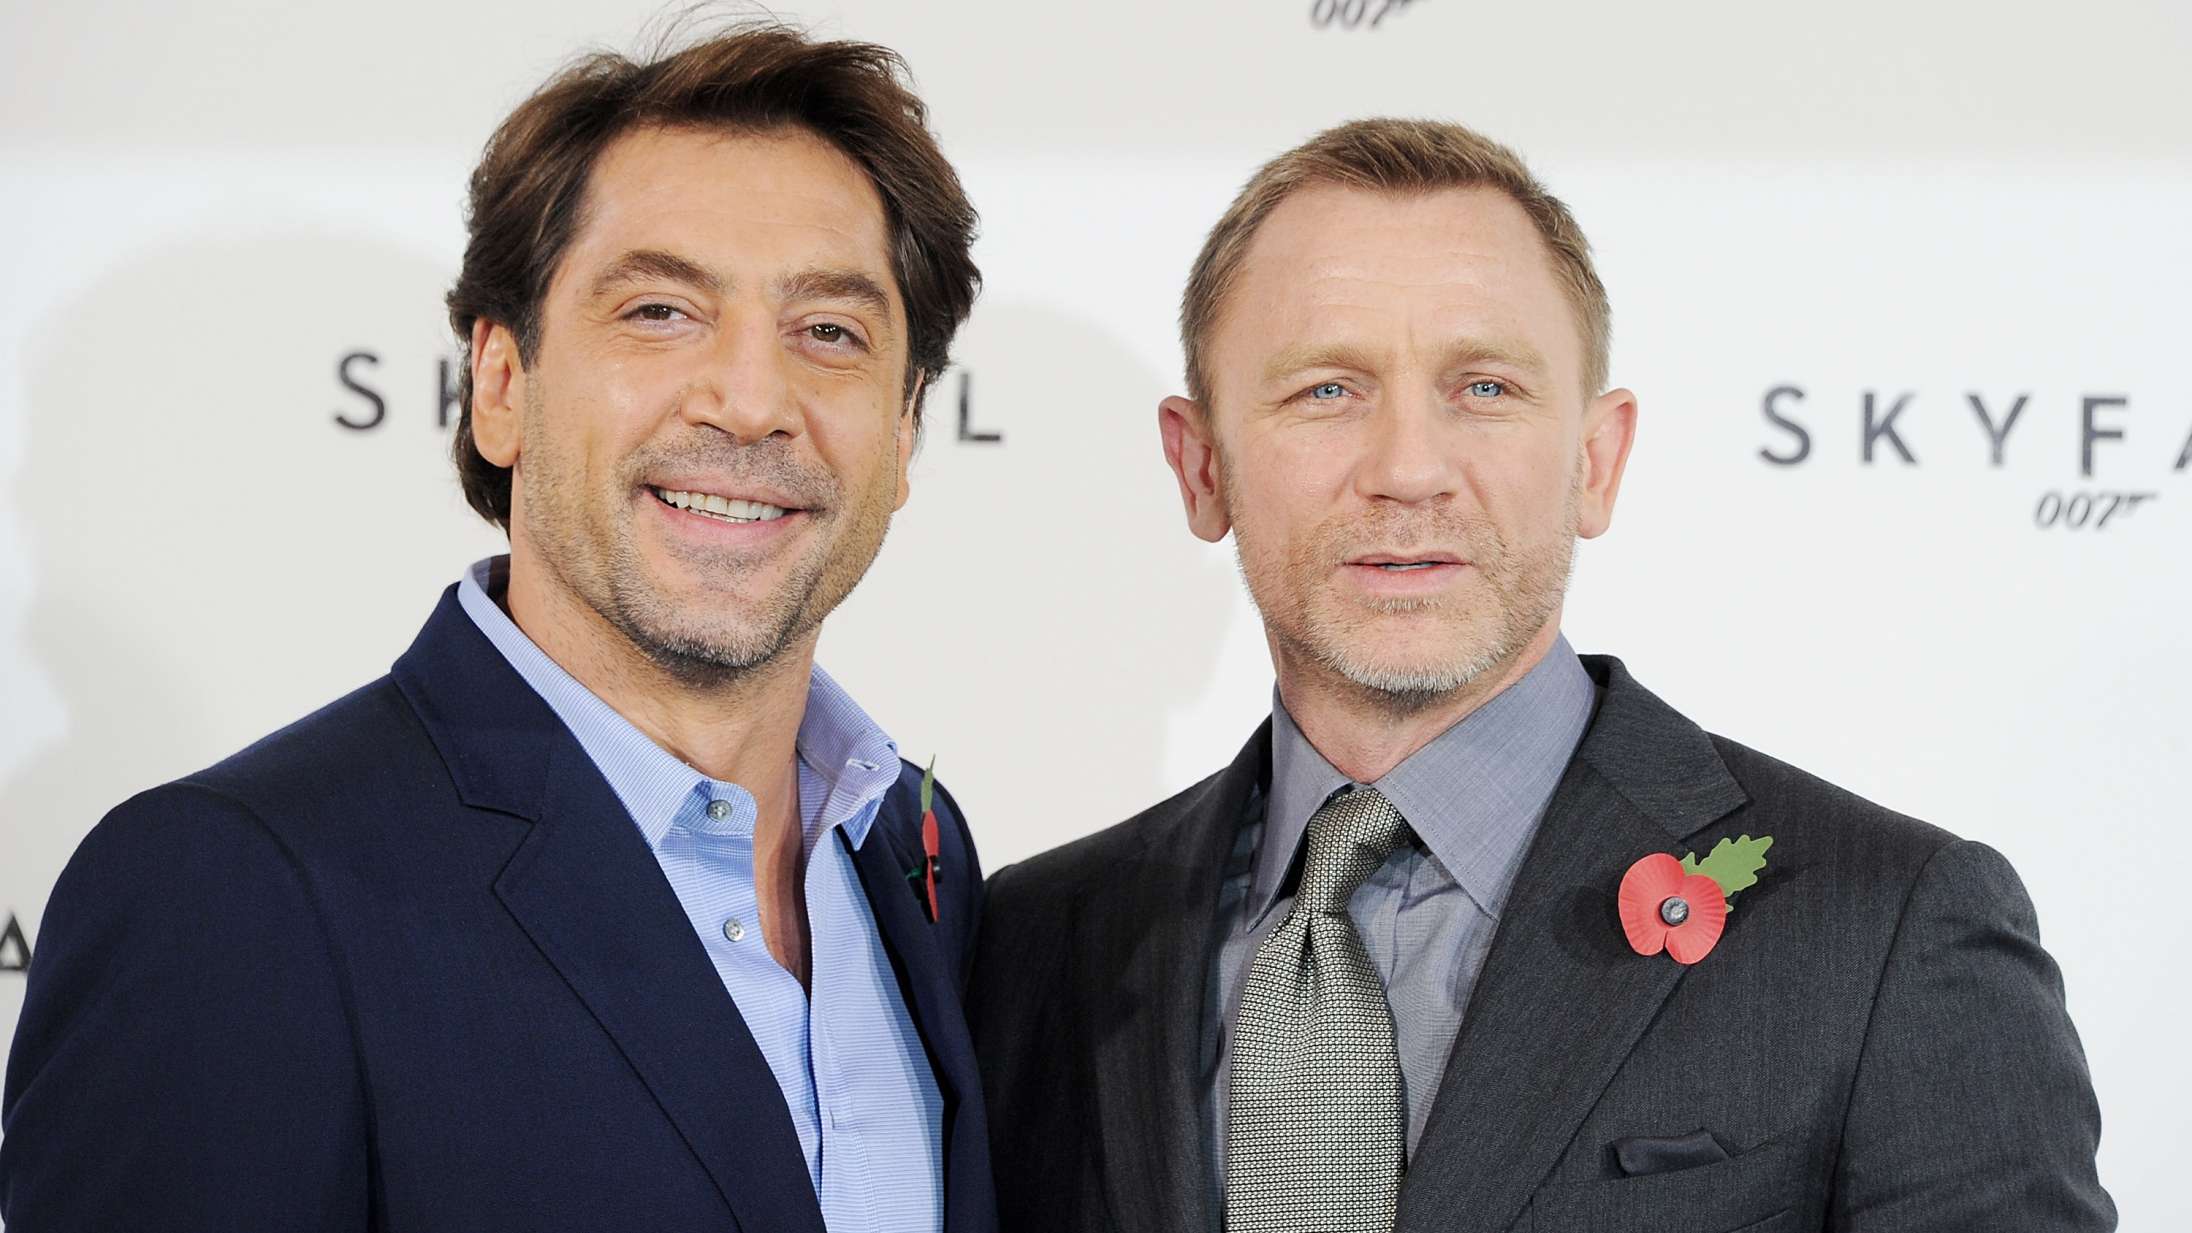 Javier Bardem fejrede Daniel Craigs fødselsdag ved at klæde sig ud som Bond-babe og springe ud af kage